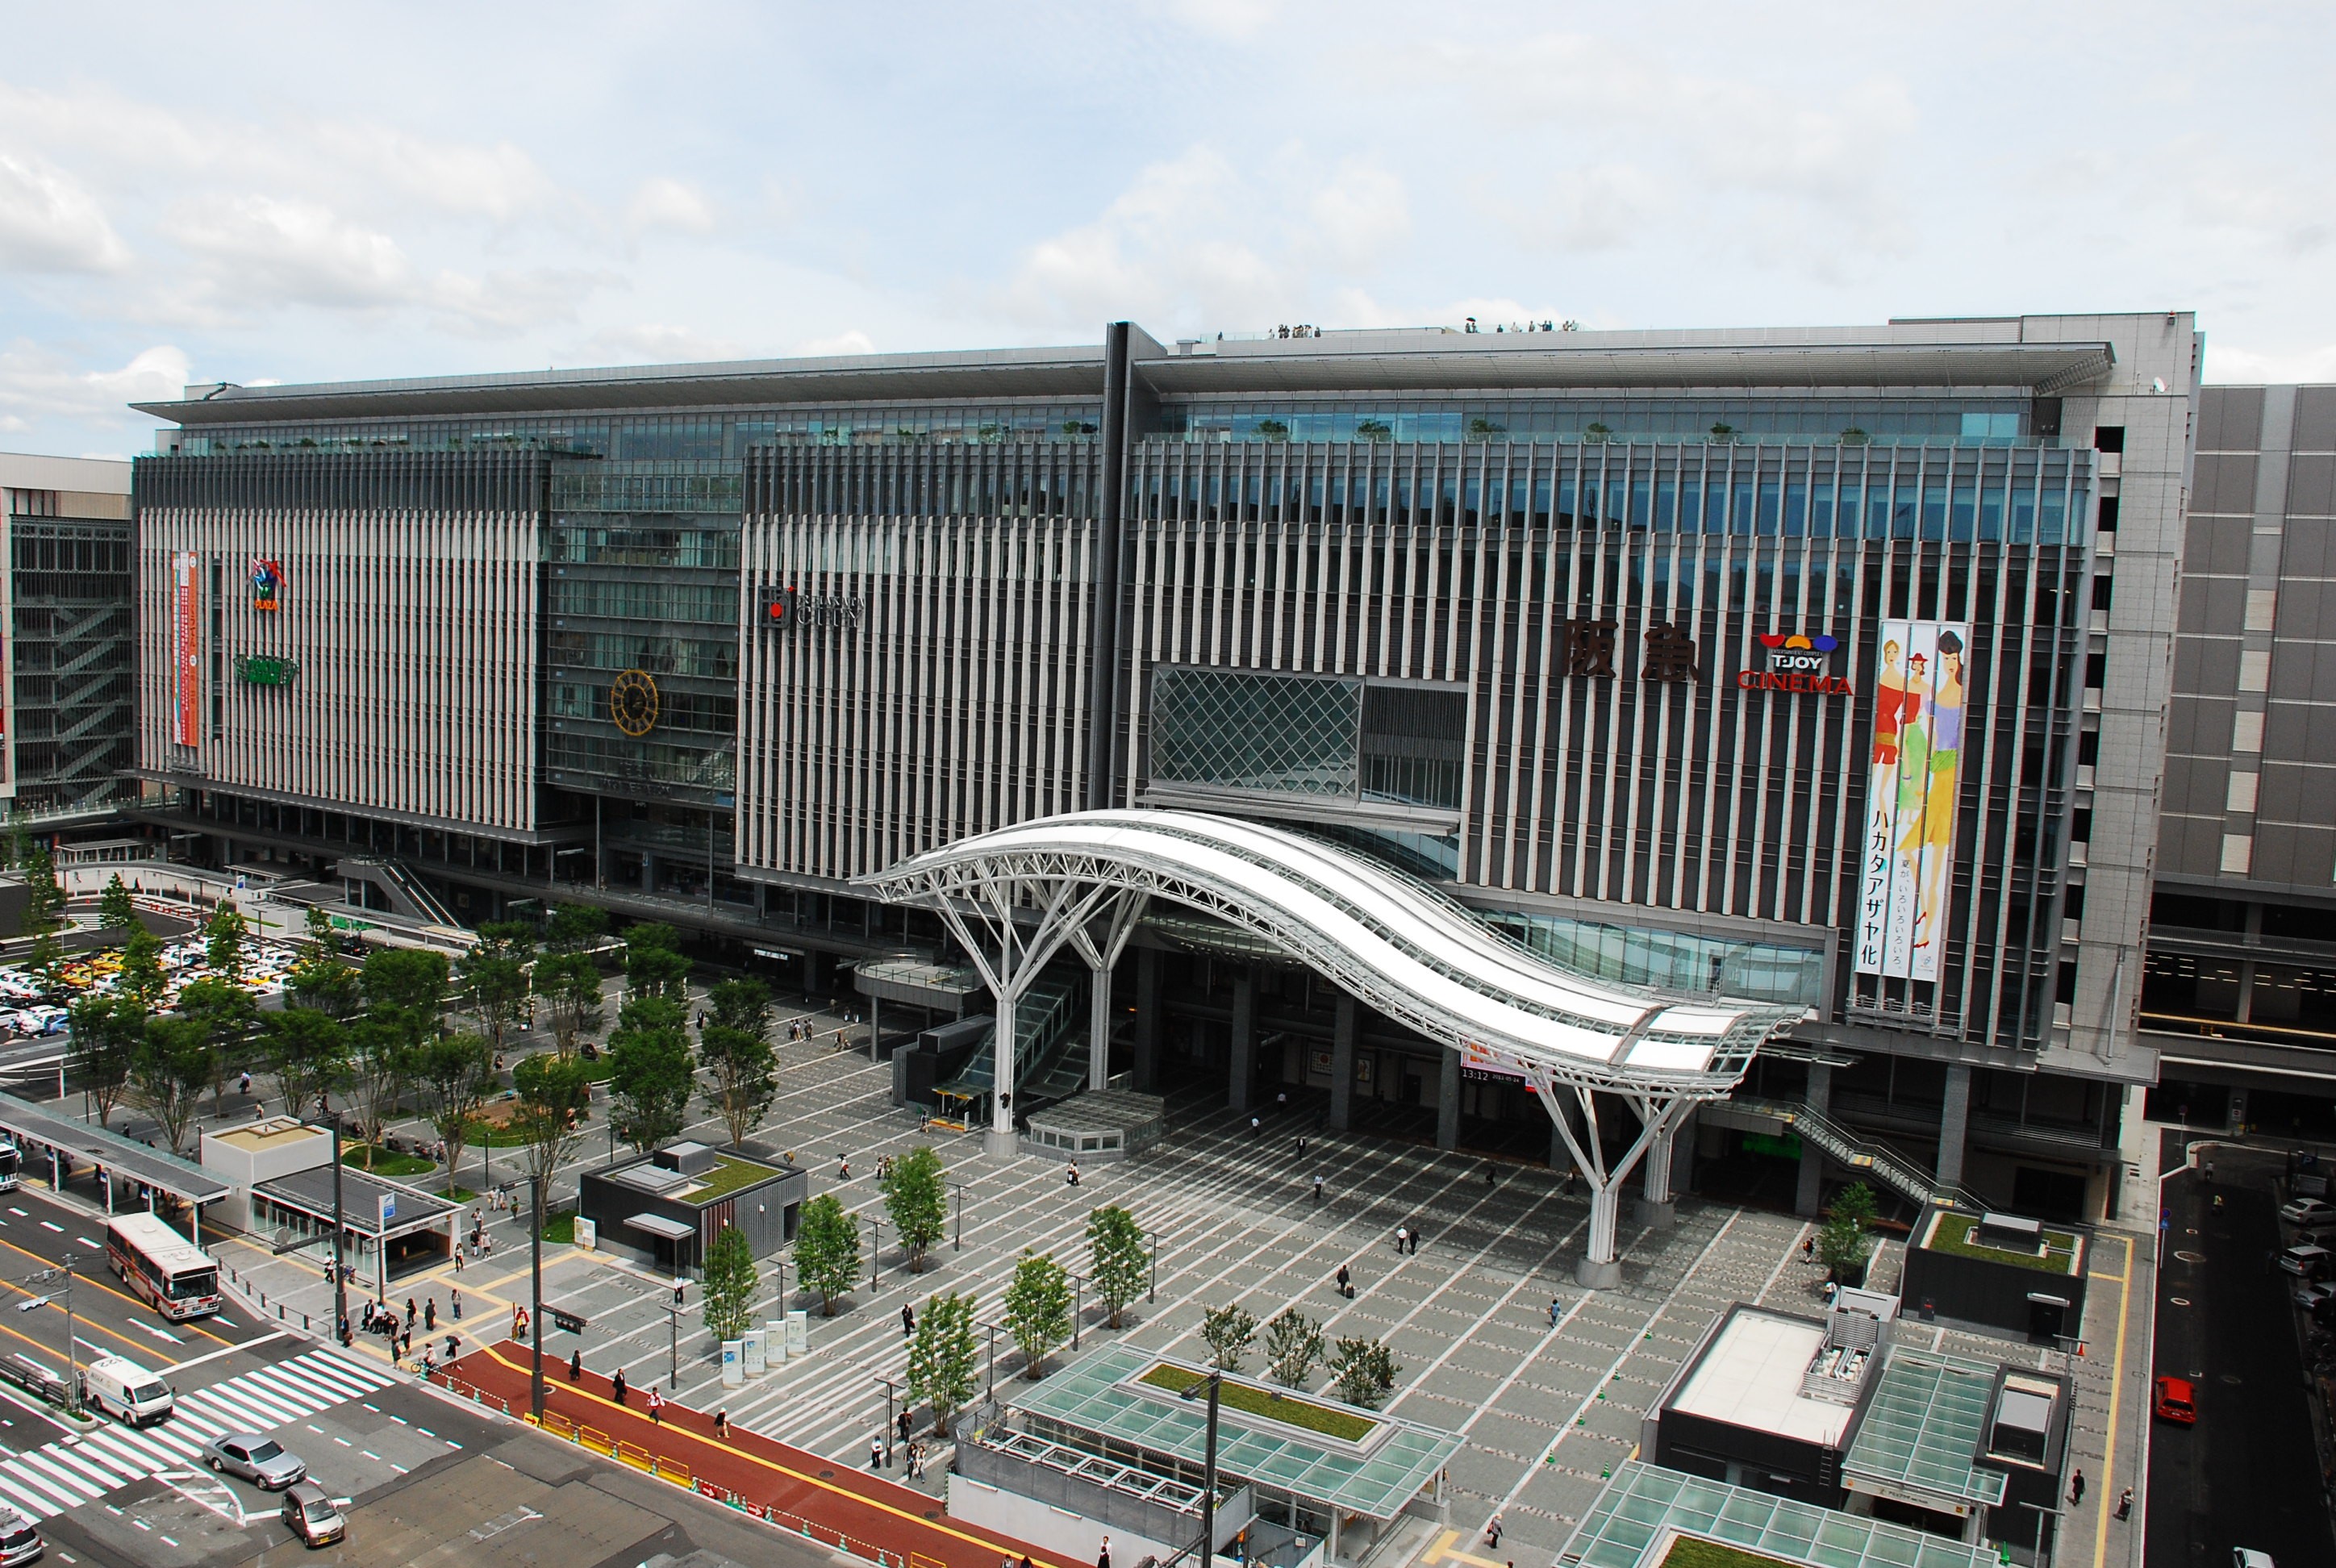 ไปใช้สถานีฮากาตะ จุดเริ่มต้นของการท่องเที่ยวในคิวชูกัน